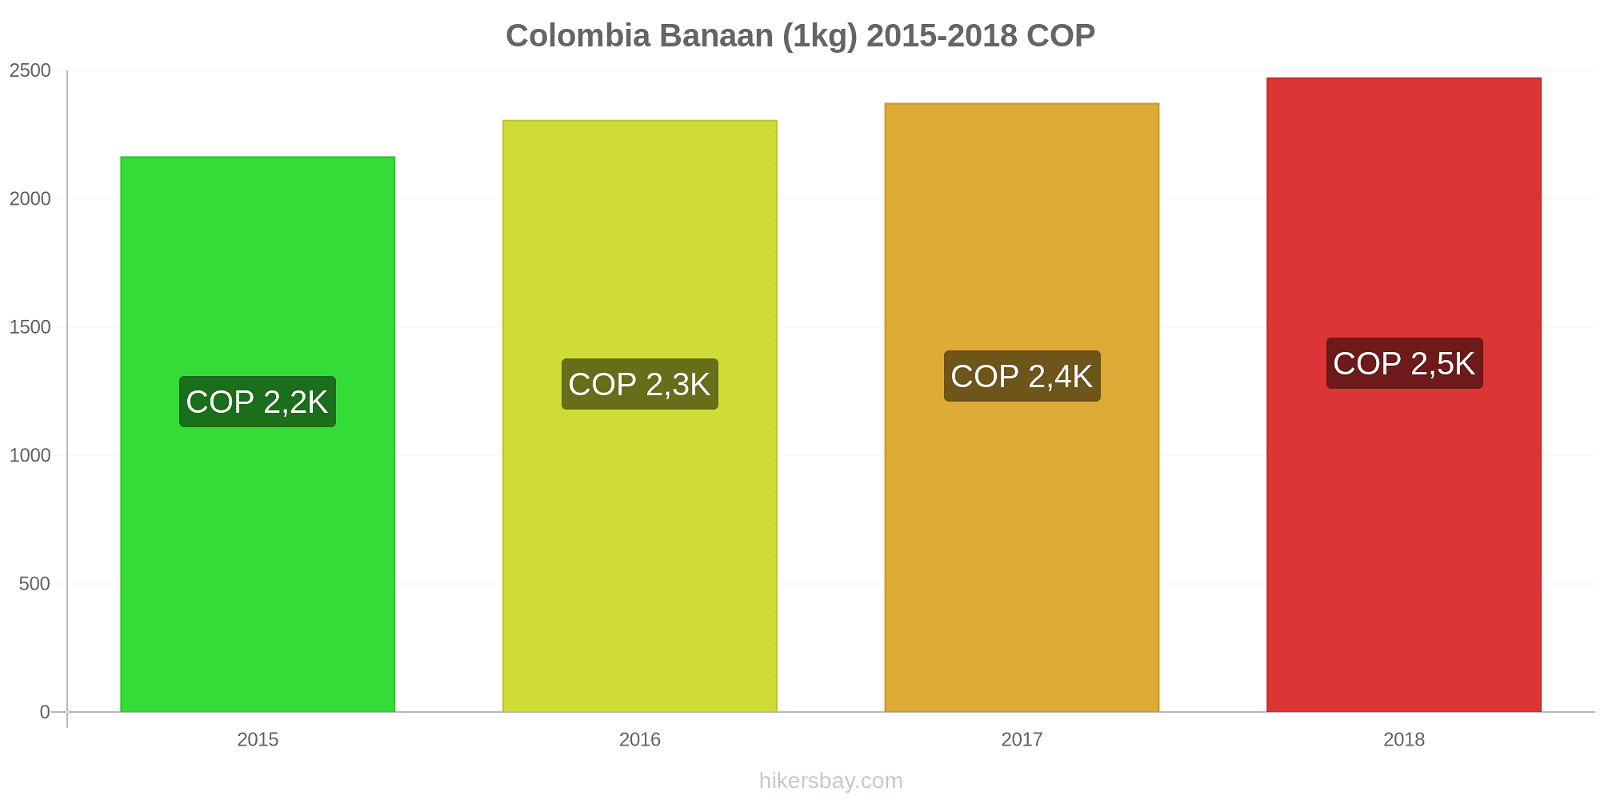 Colombia prijswijzigingen Bananen (1kg) hikersbay.com